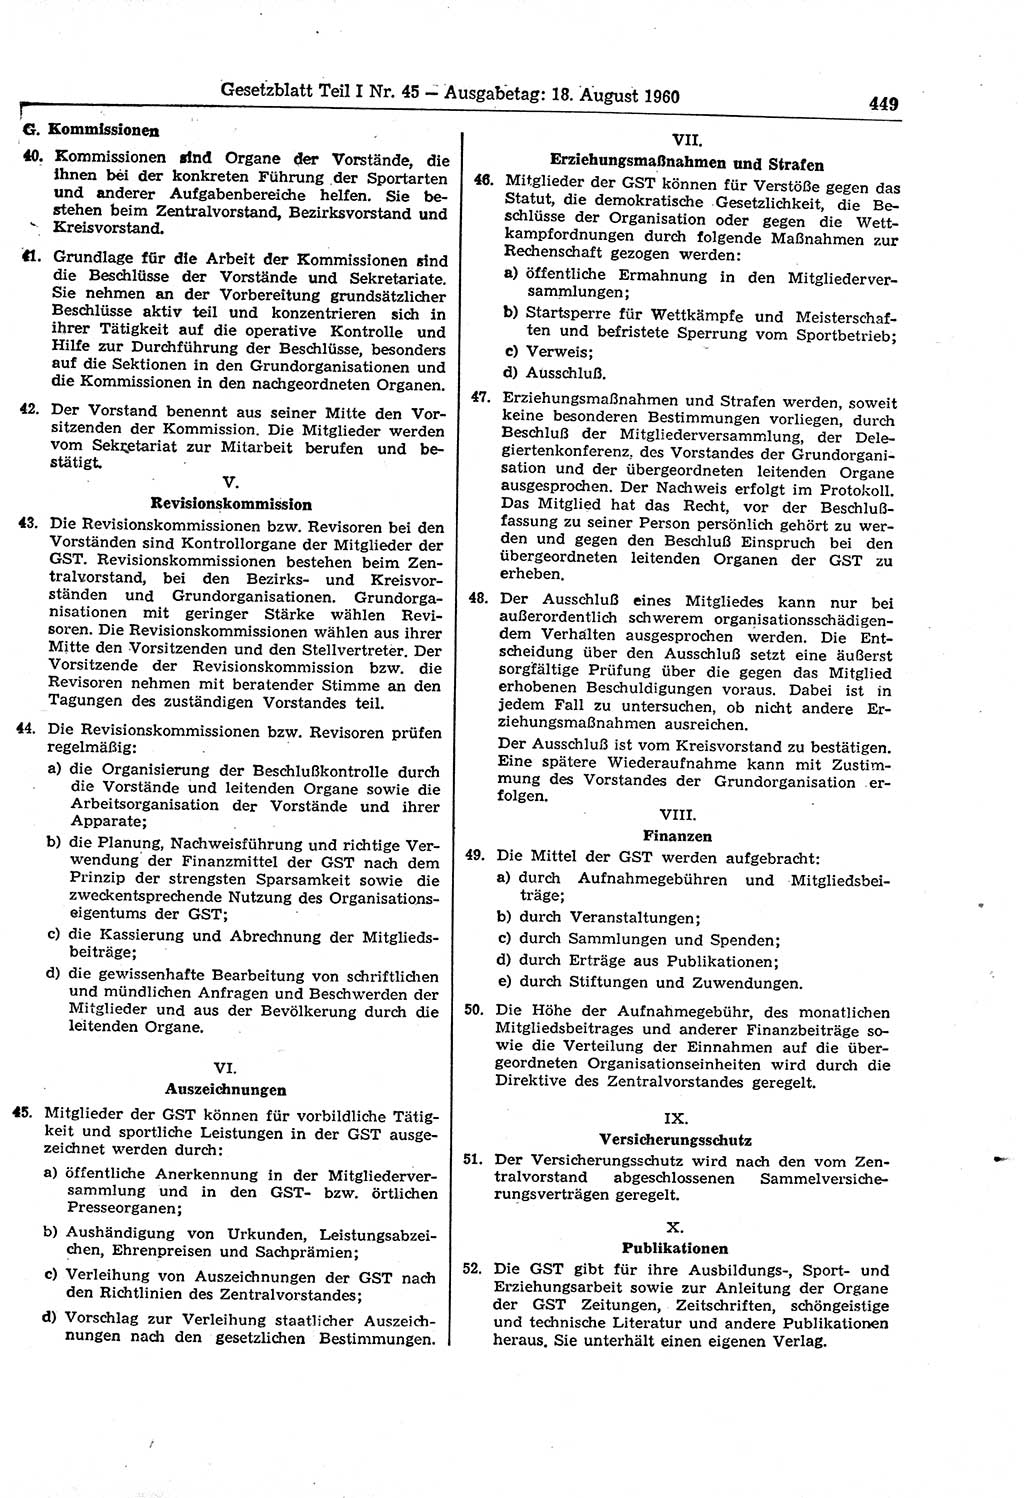 Gesetzblatt (GBl.) der Deutschen Demokratischen Republik (DDR) Teil Ⅰ 1960, Seite 449 (GBl. DDR Ⅰ 1960, S. 449)